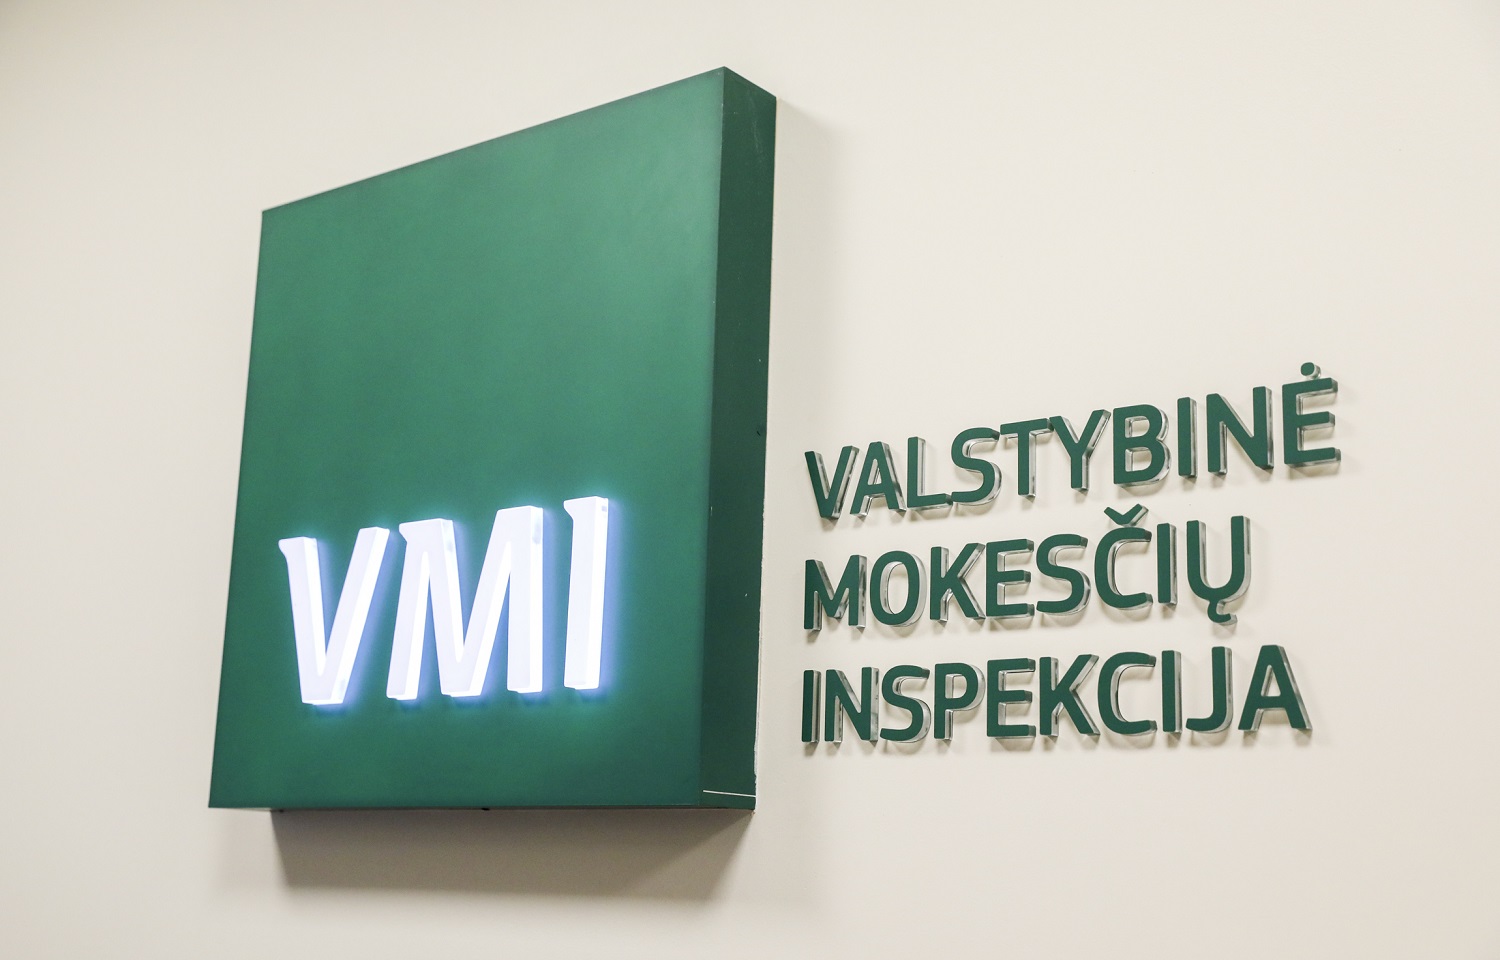 VMI netrukus skelbs pajamų deklaravimo startą: ragina gyventojus kol kas deklaracijų neteikti